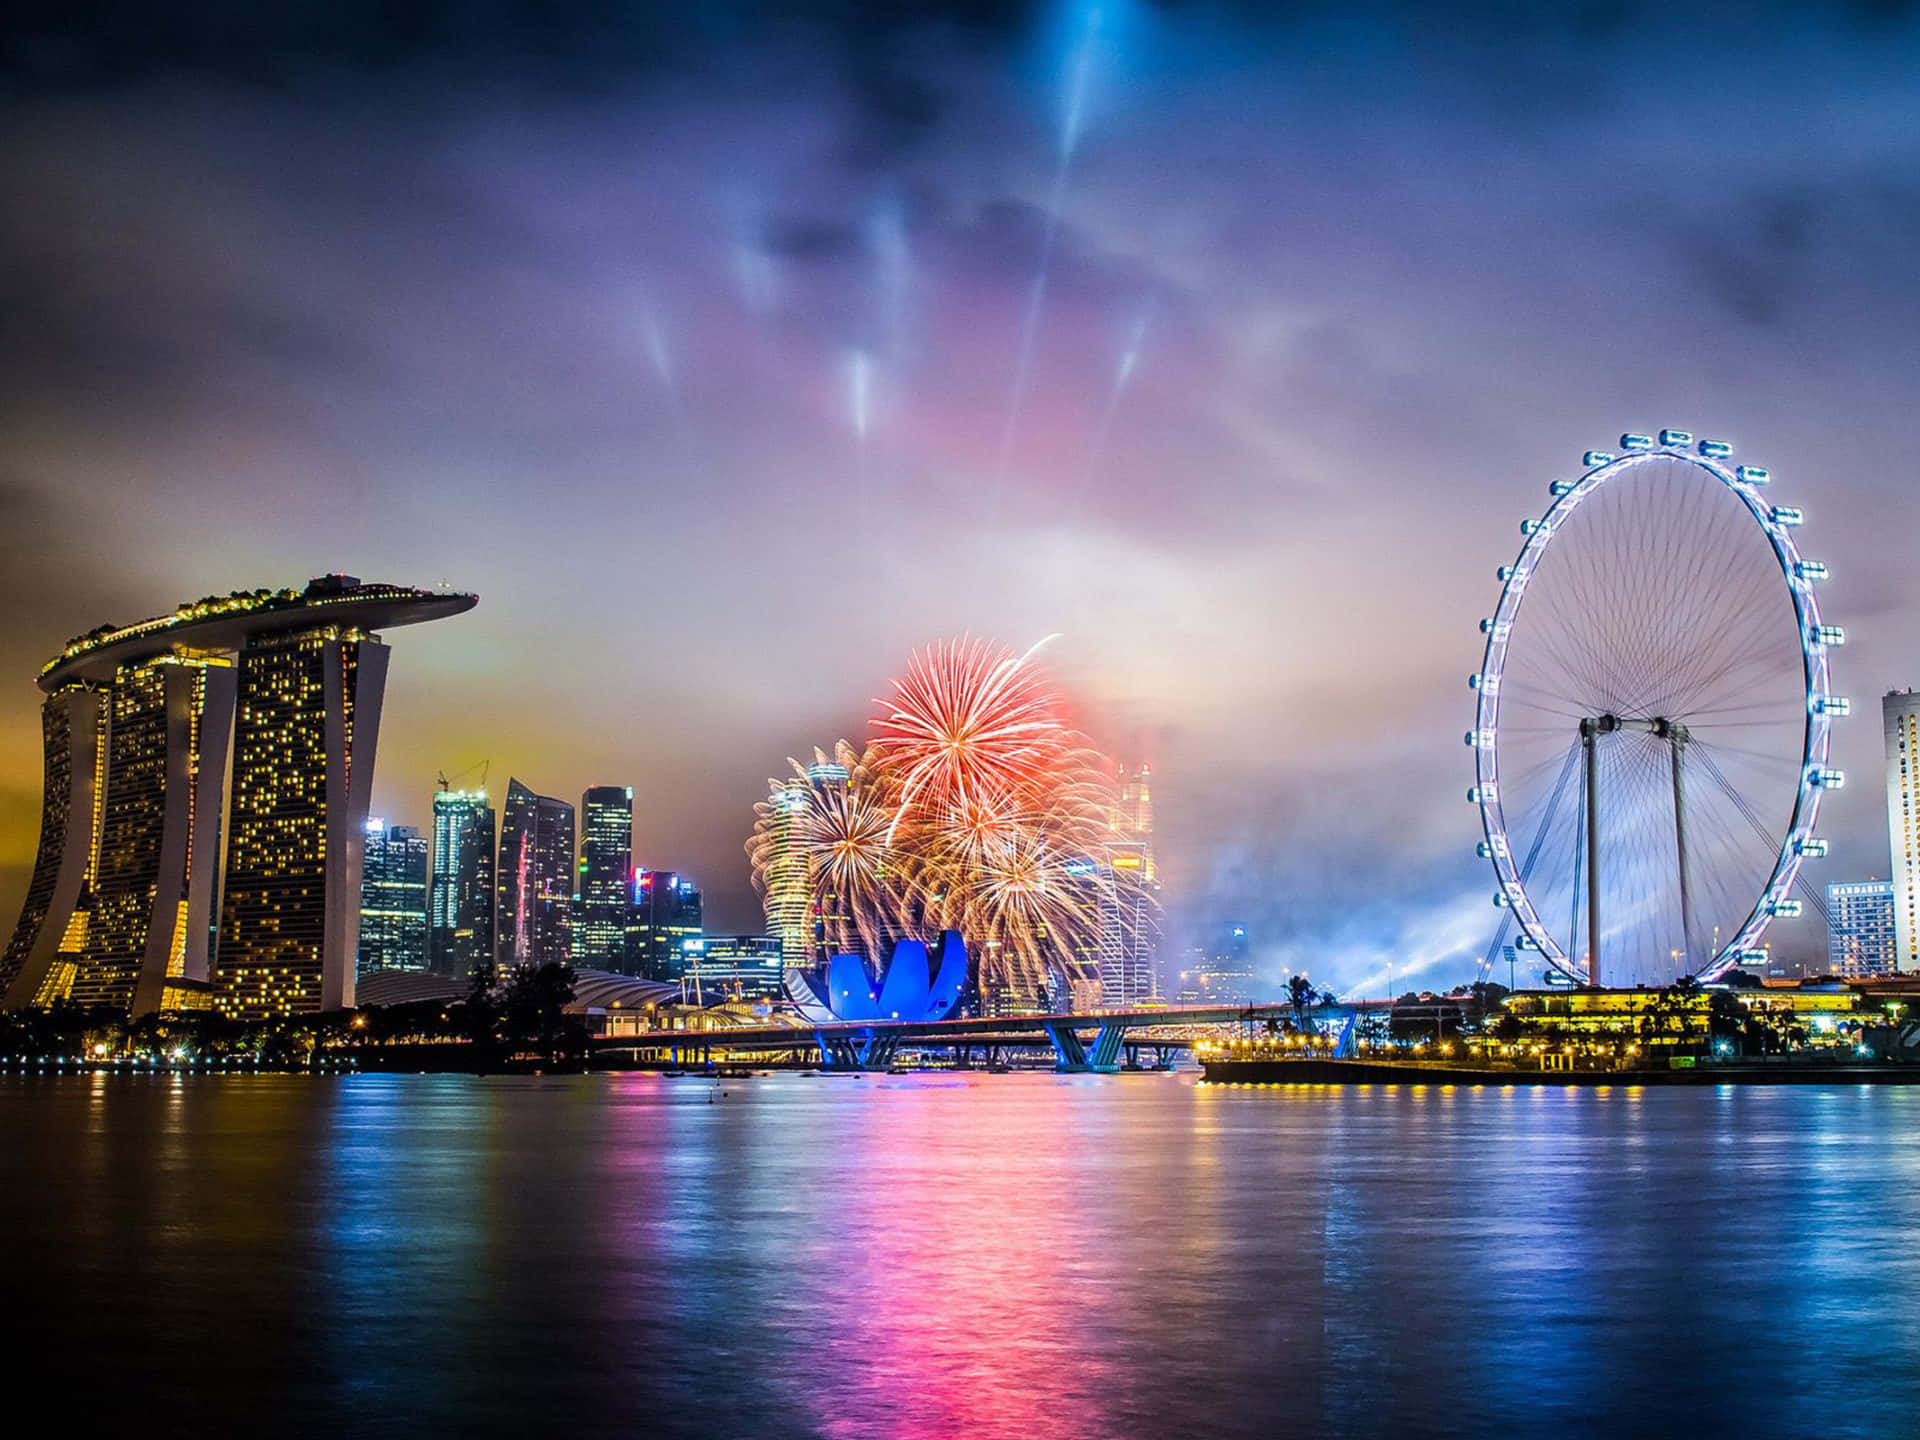 Singapurfeuerwerksfeier Bild